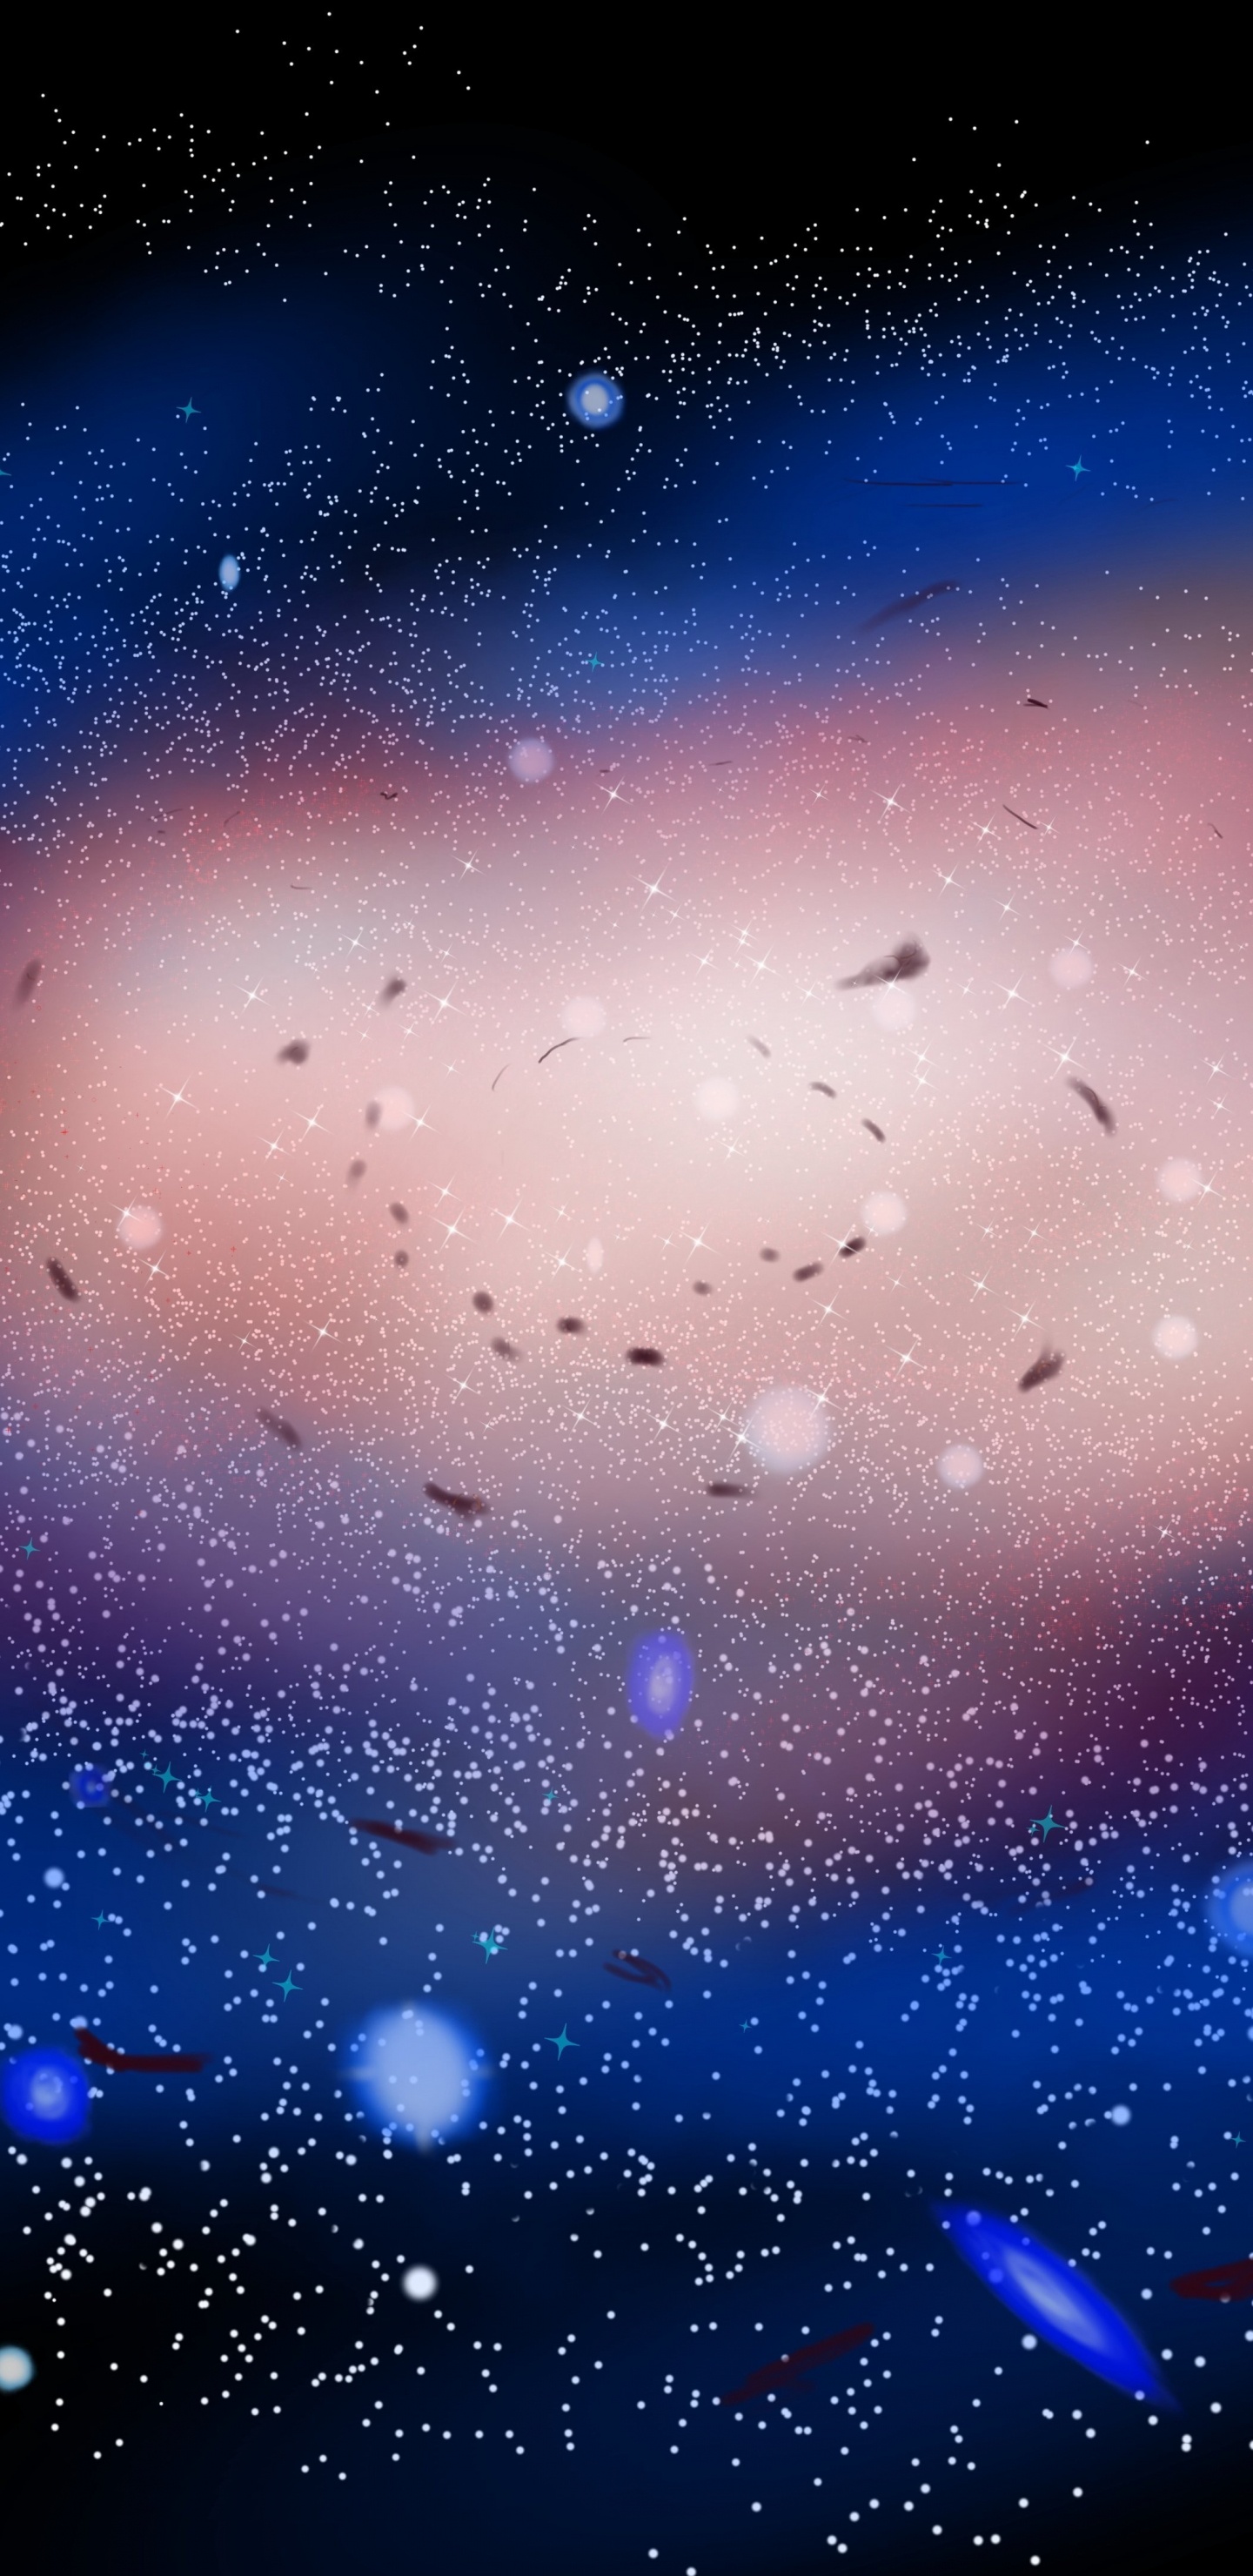 Blaue Und Weiße Sterne am Himmel. Wallpaper in 1440x2960 Resolution